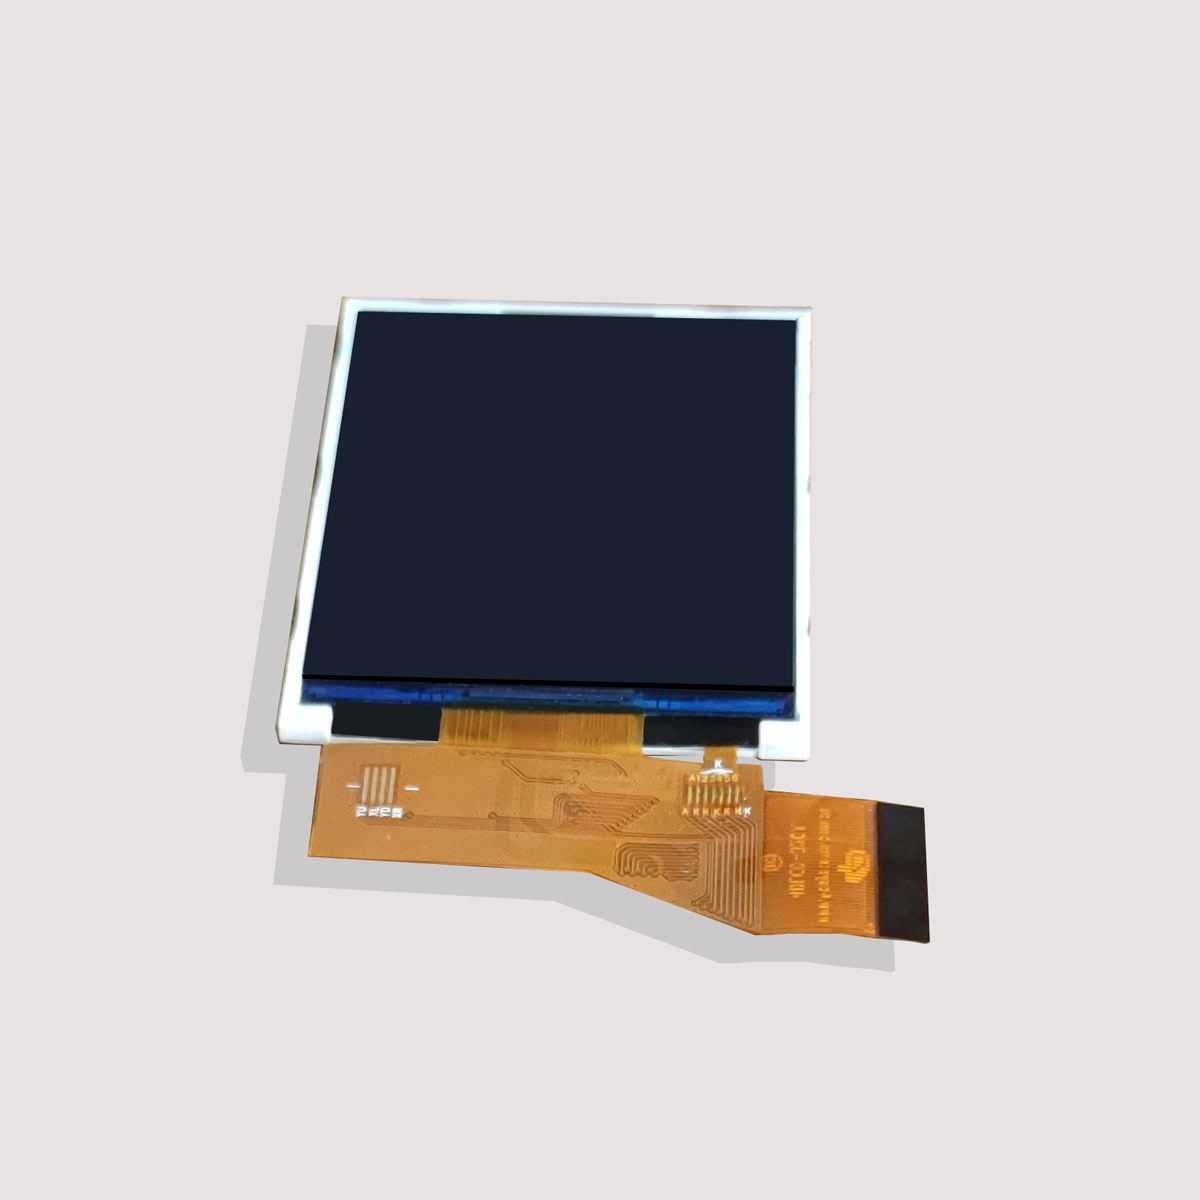 LCD液晶屏有哪些缺点？